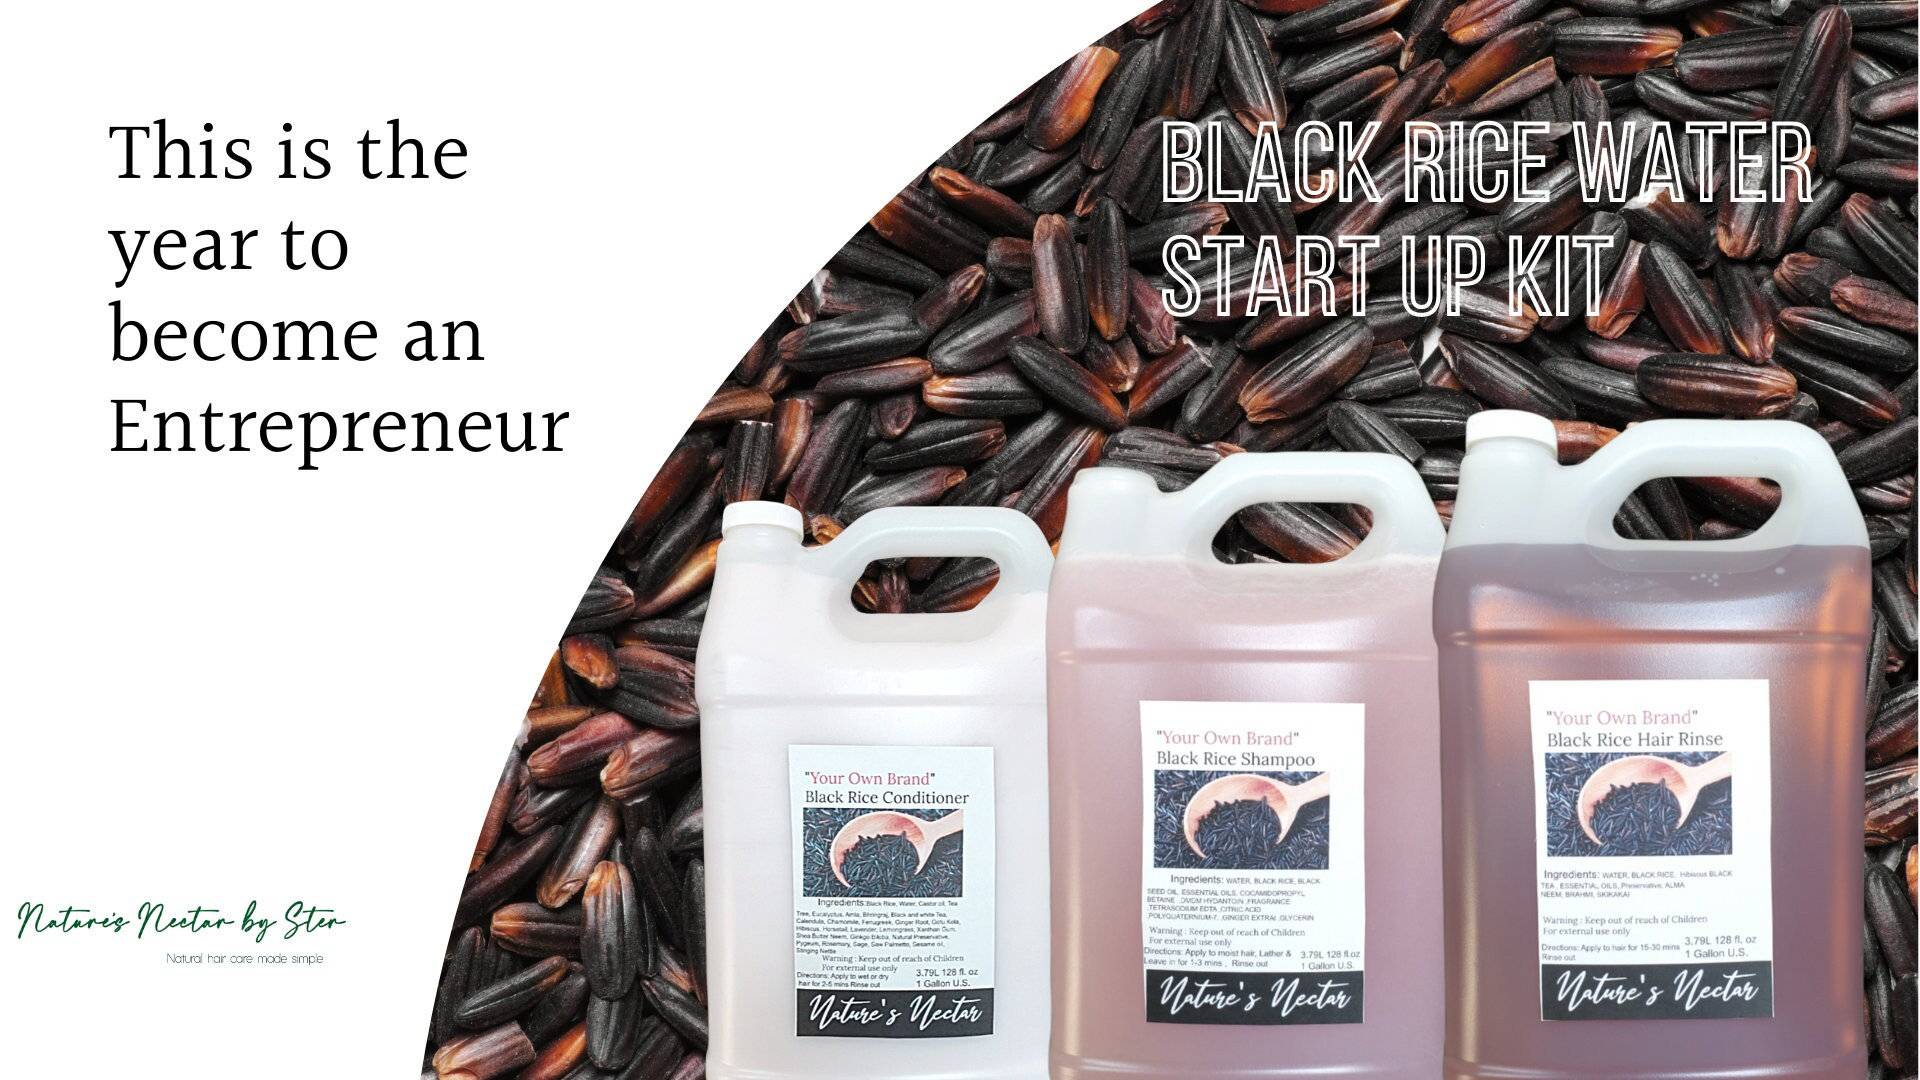 Rabatt Entrepreneur Kit Enthält 3 Gallonen Produkt, Um Dein Eigenes Geschäft Zu Gründen von NaturesNectarbySter